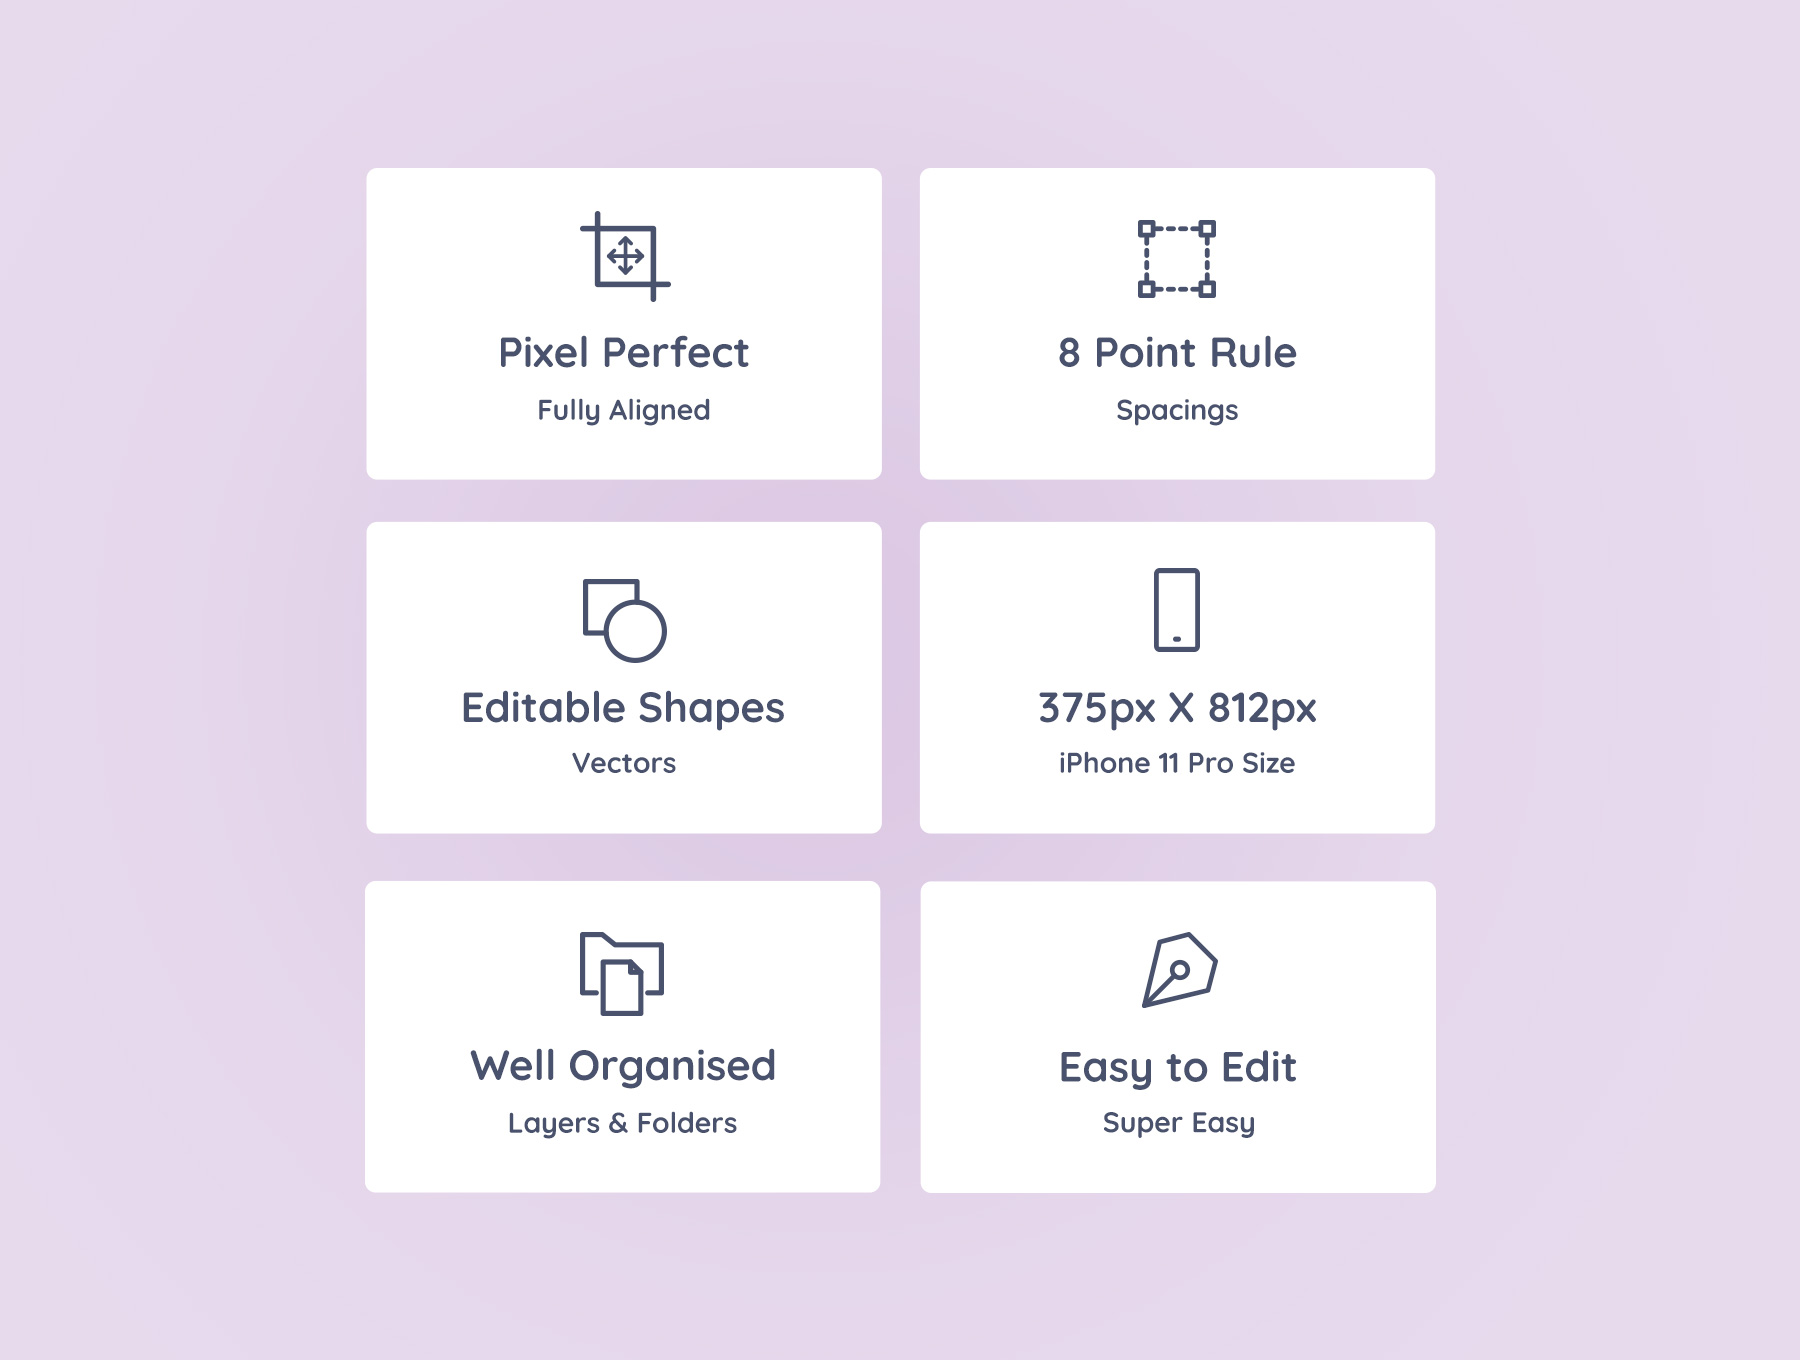 1253 美食订购外卖应用软件APP UI套件模板 Eatfresh – Food Ordering App